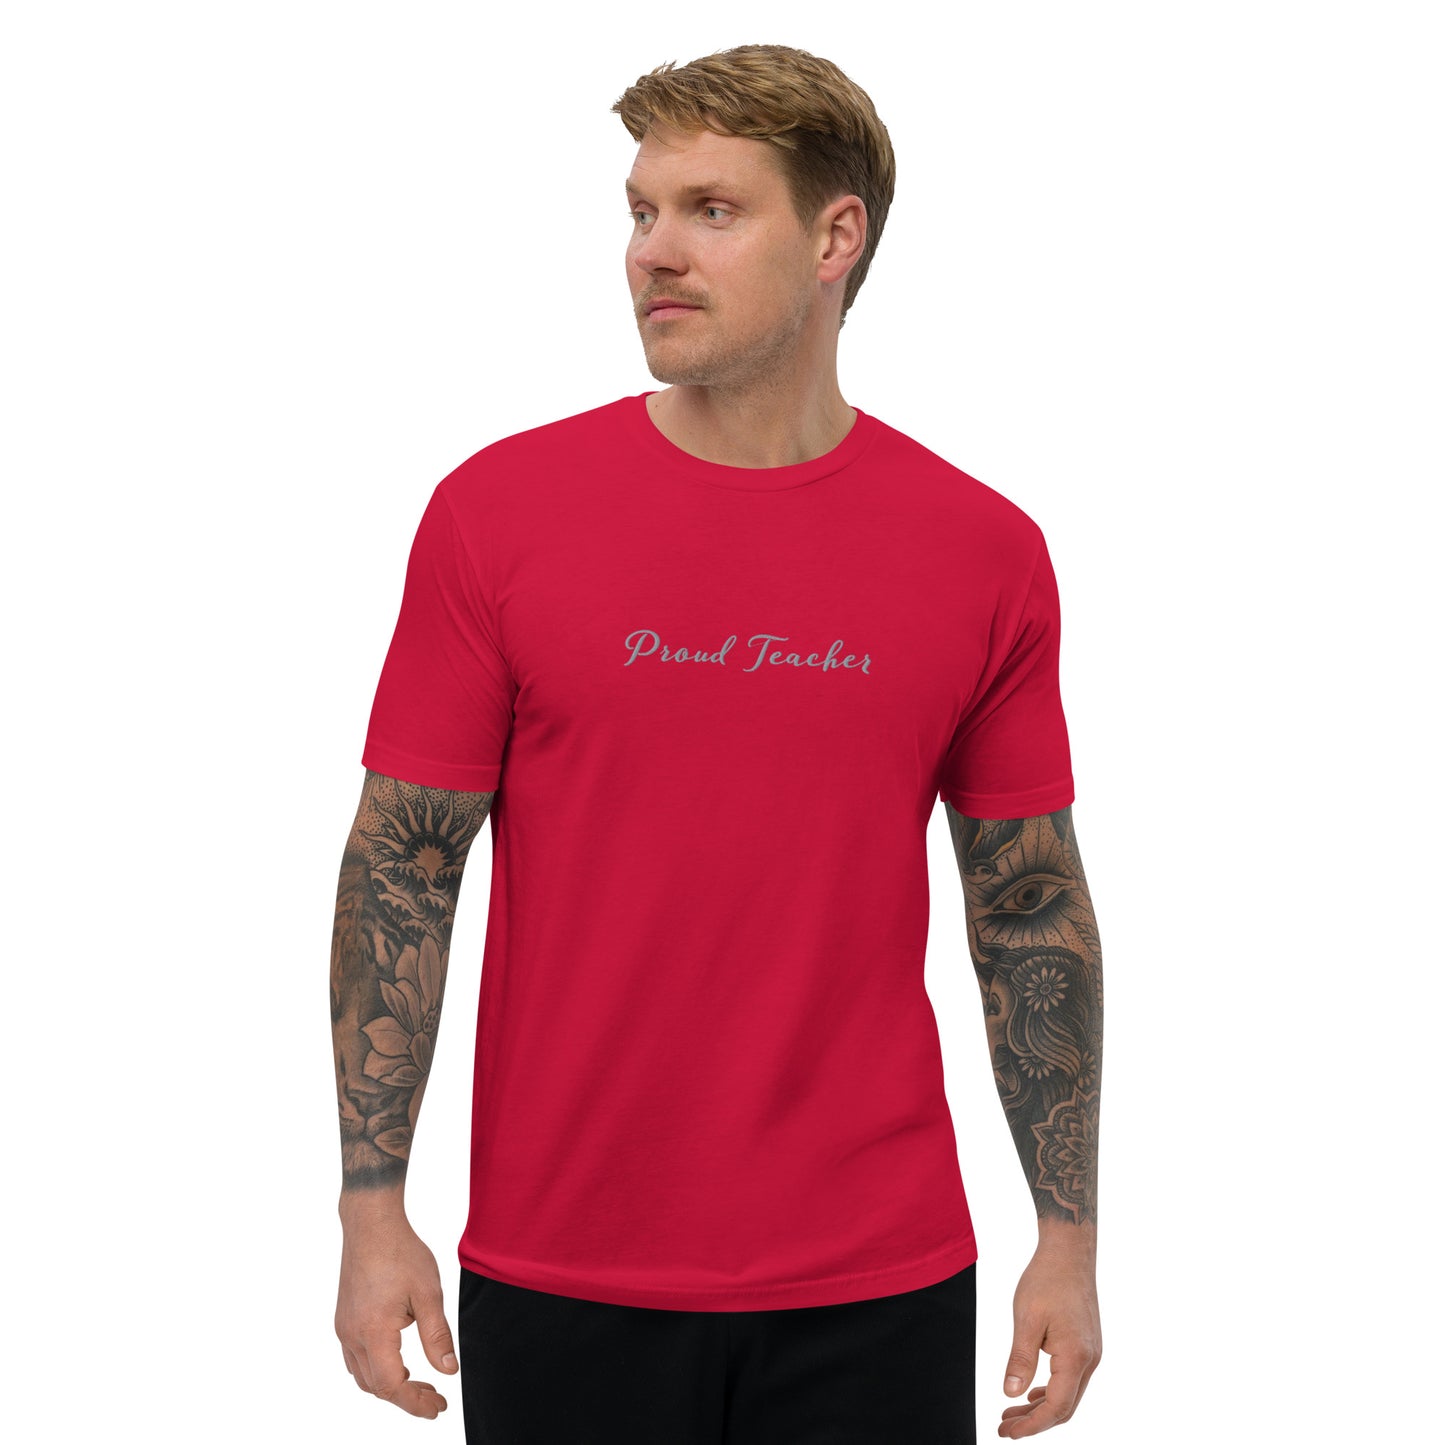 New High Quality Proud Teacher Short Sleeve T-shirt